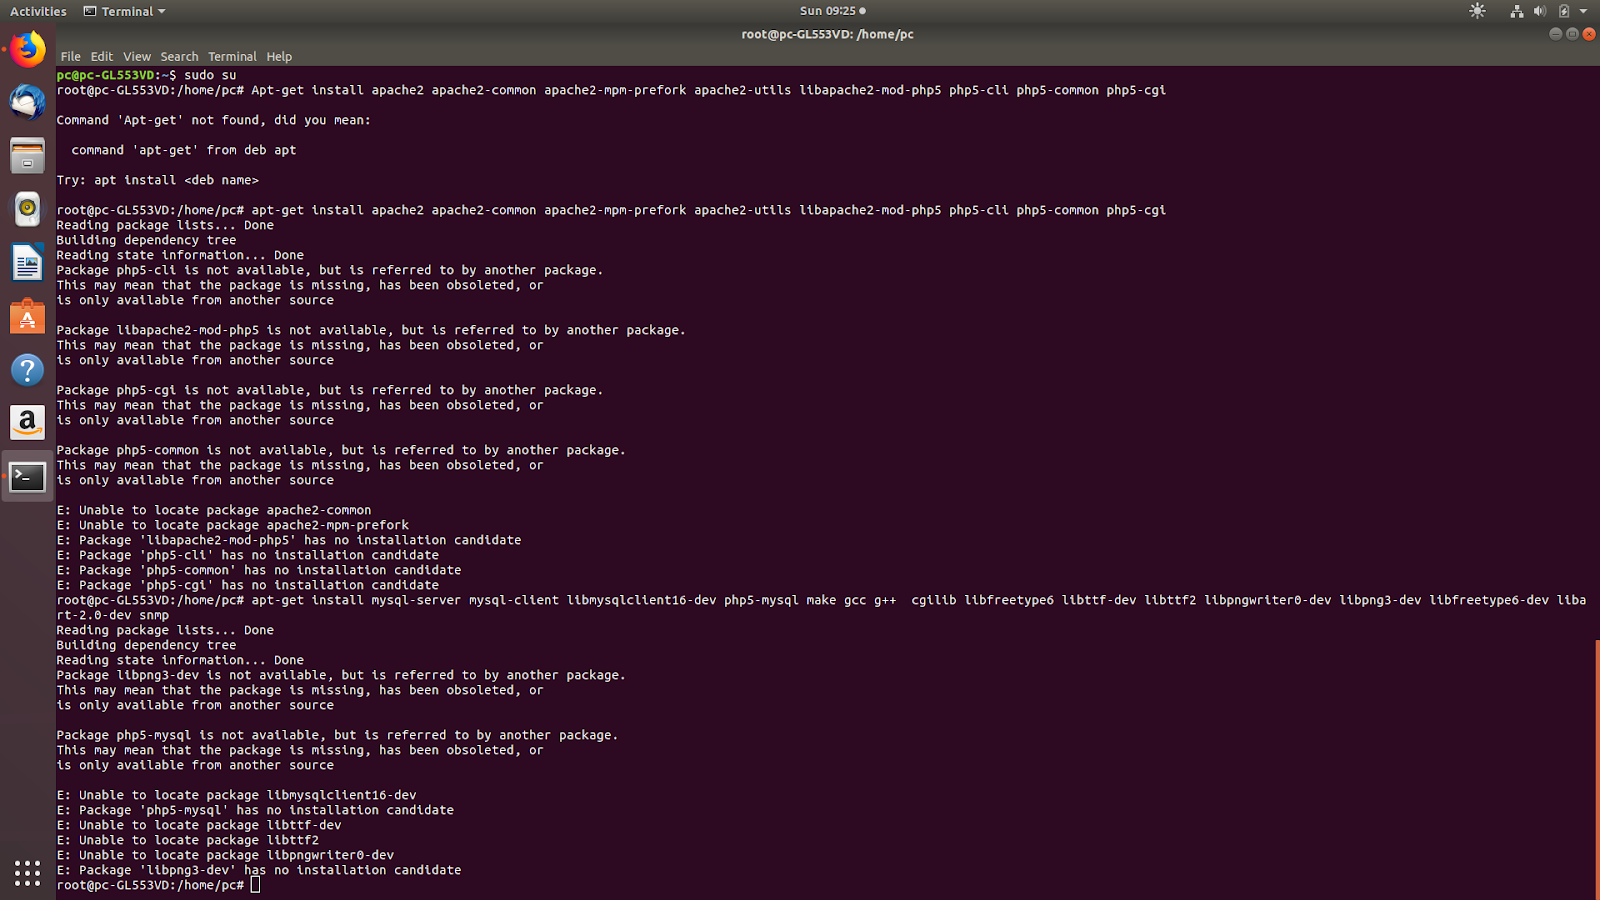 Как проверить (сканировать) на наличие открытых портов в linux - команды linux